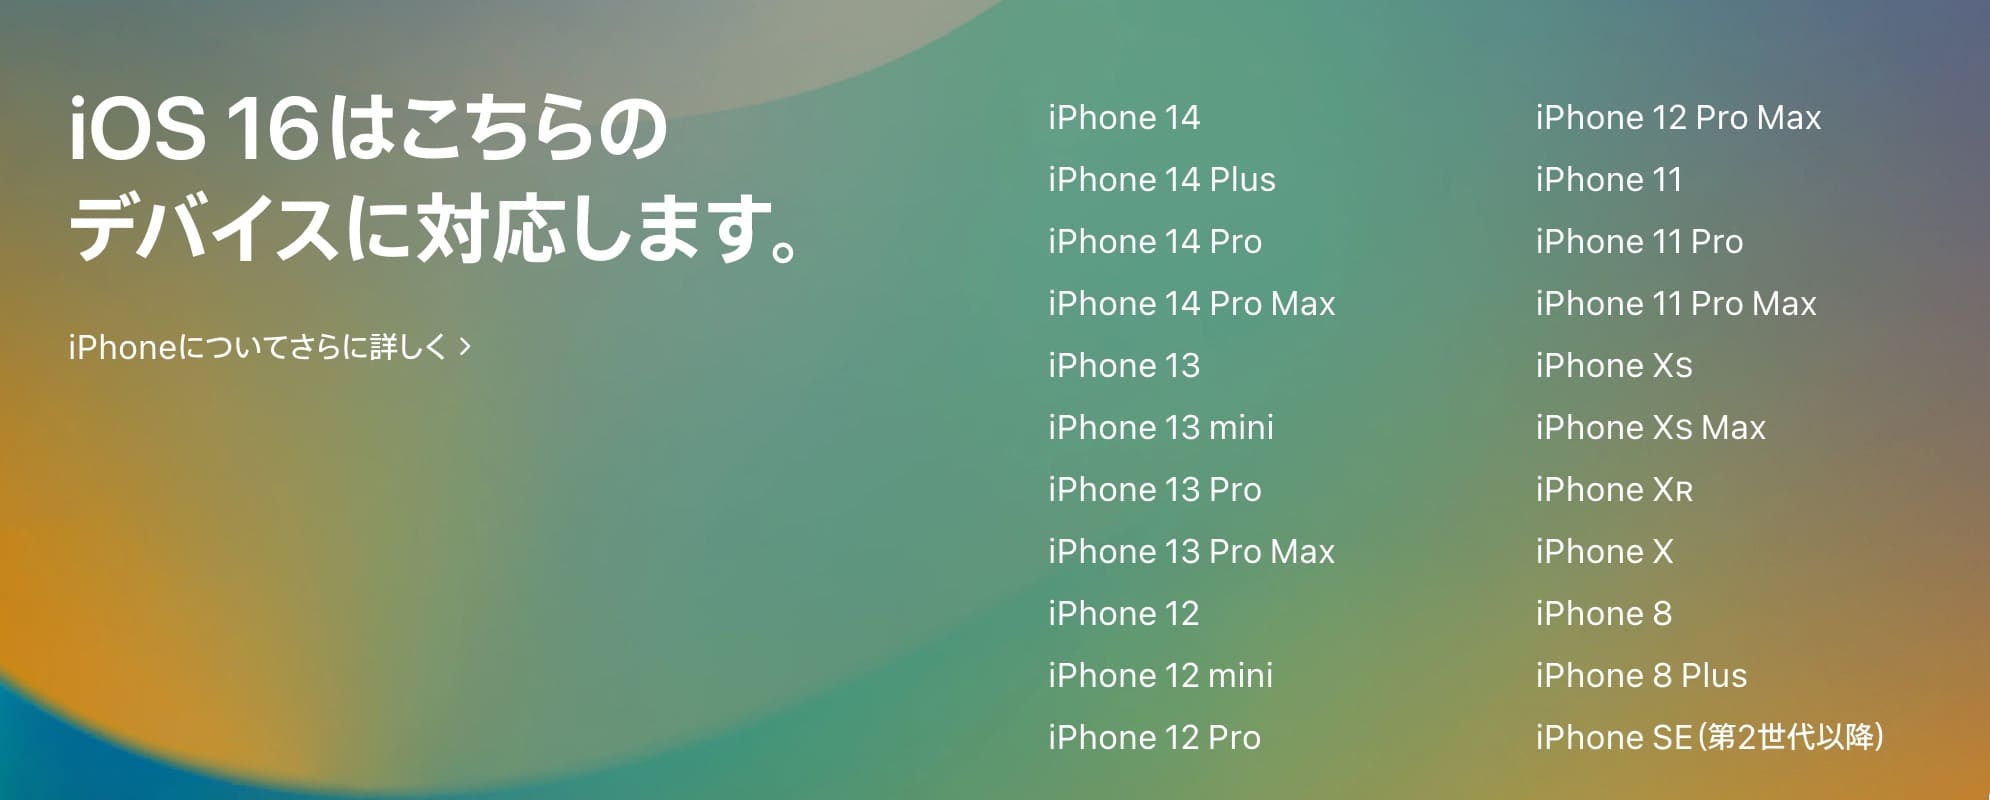 ““iOS16対応機種””